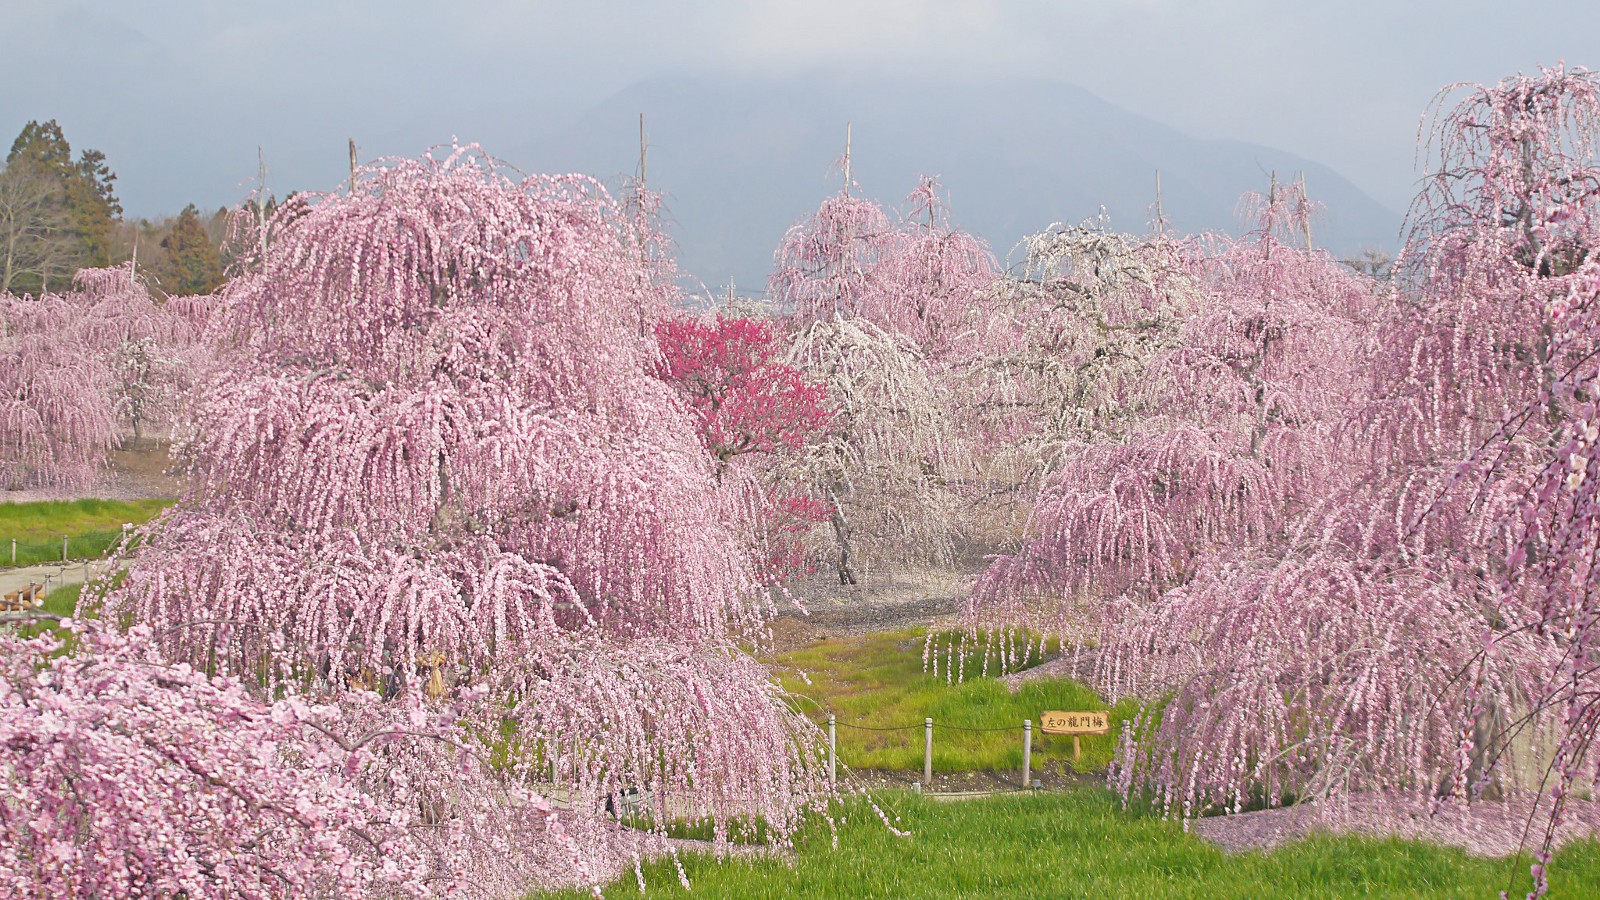 Japan Cherry Blossom 2020 Forecast